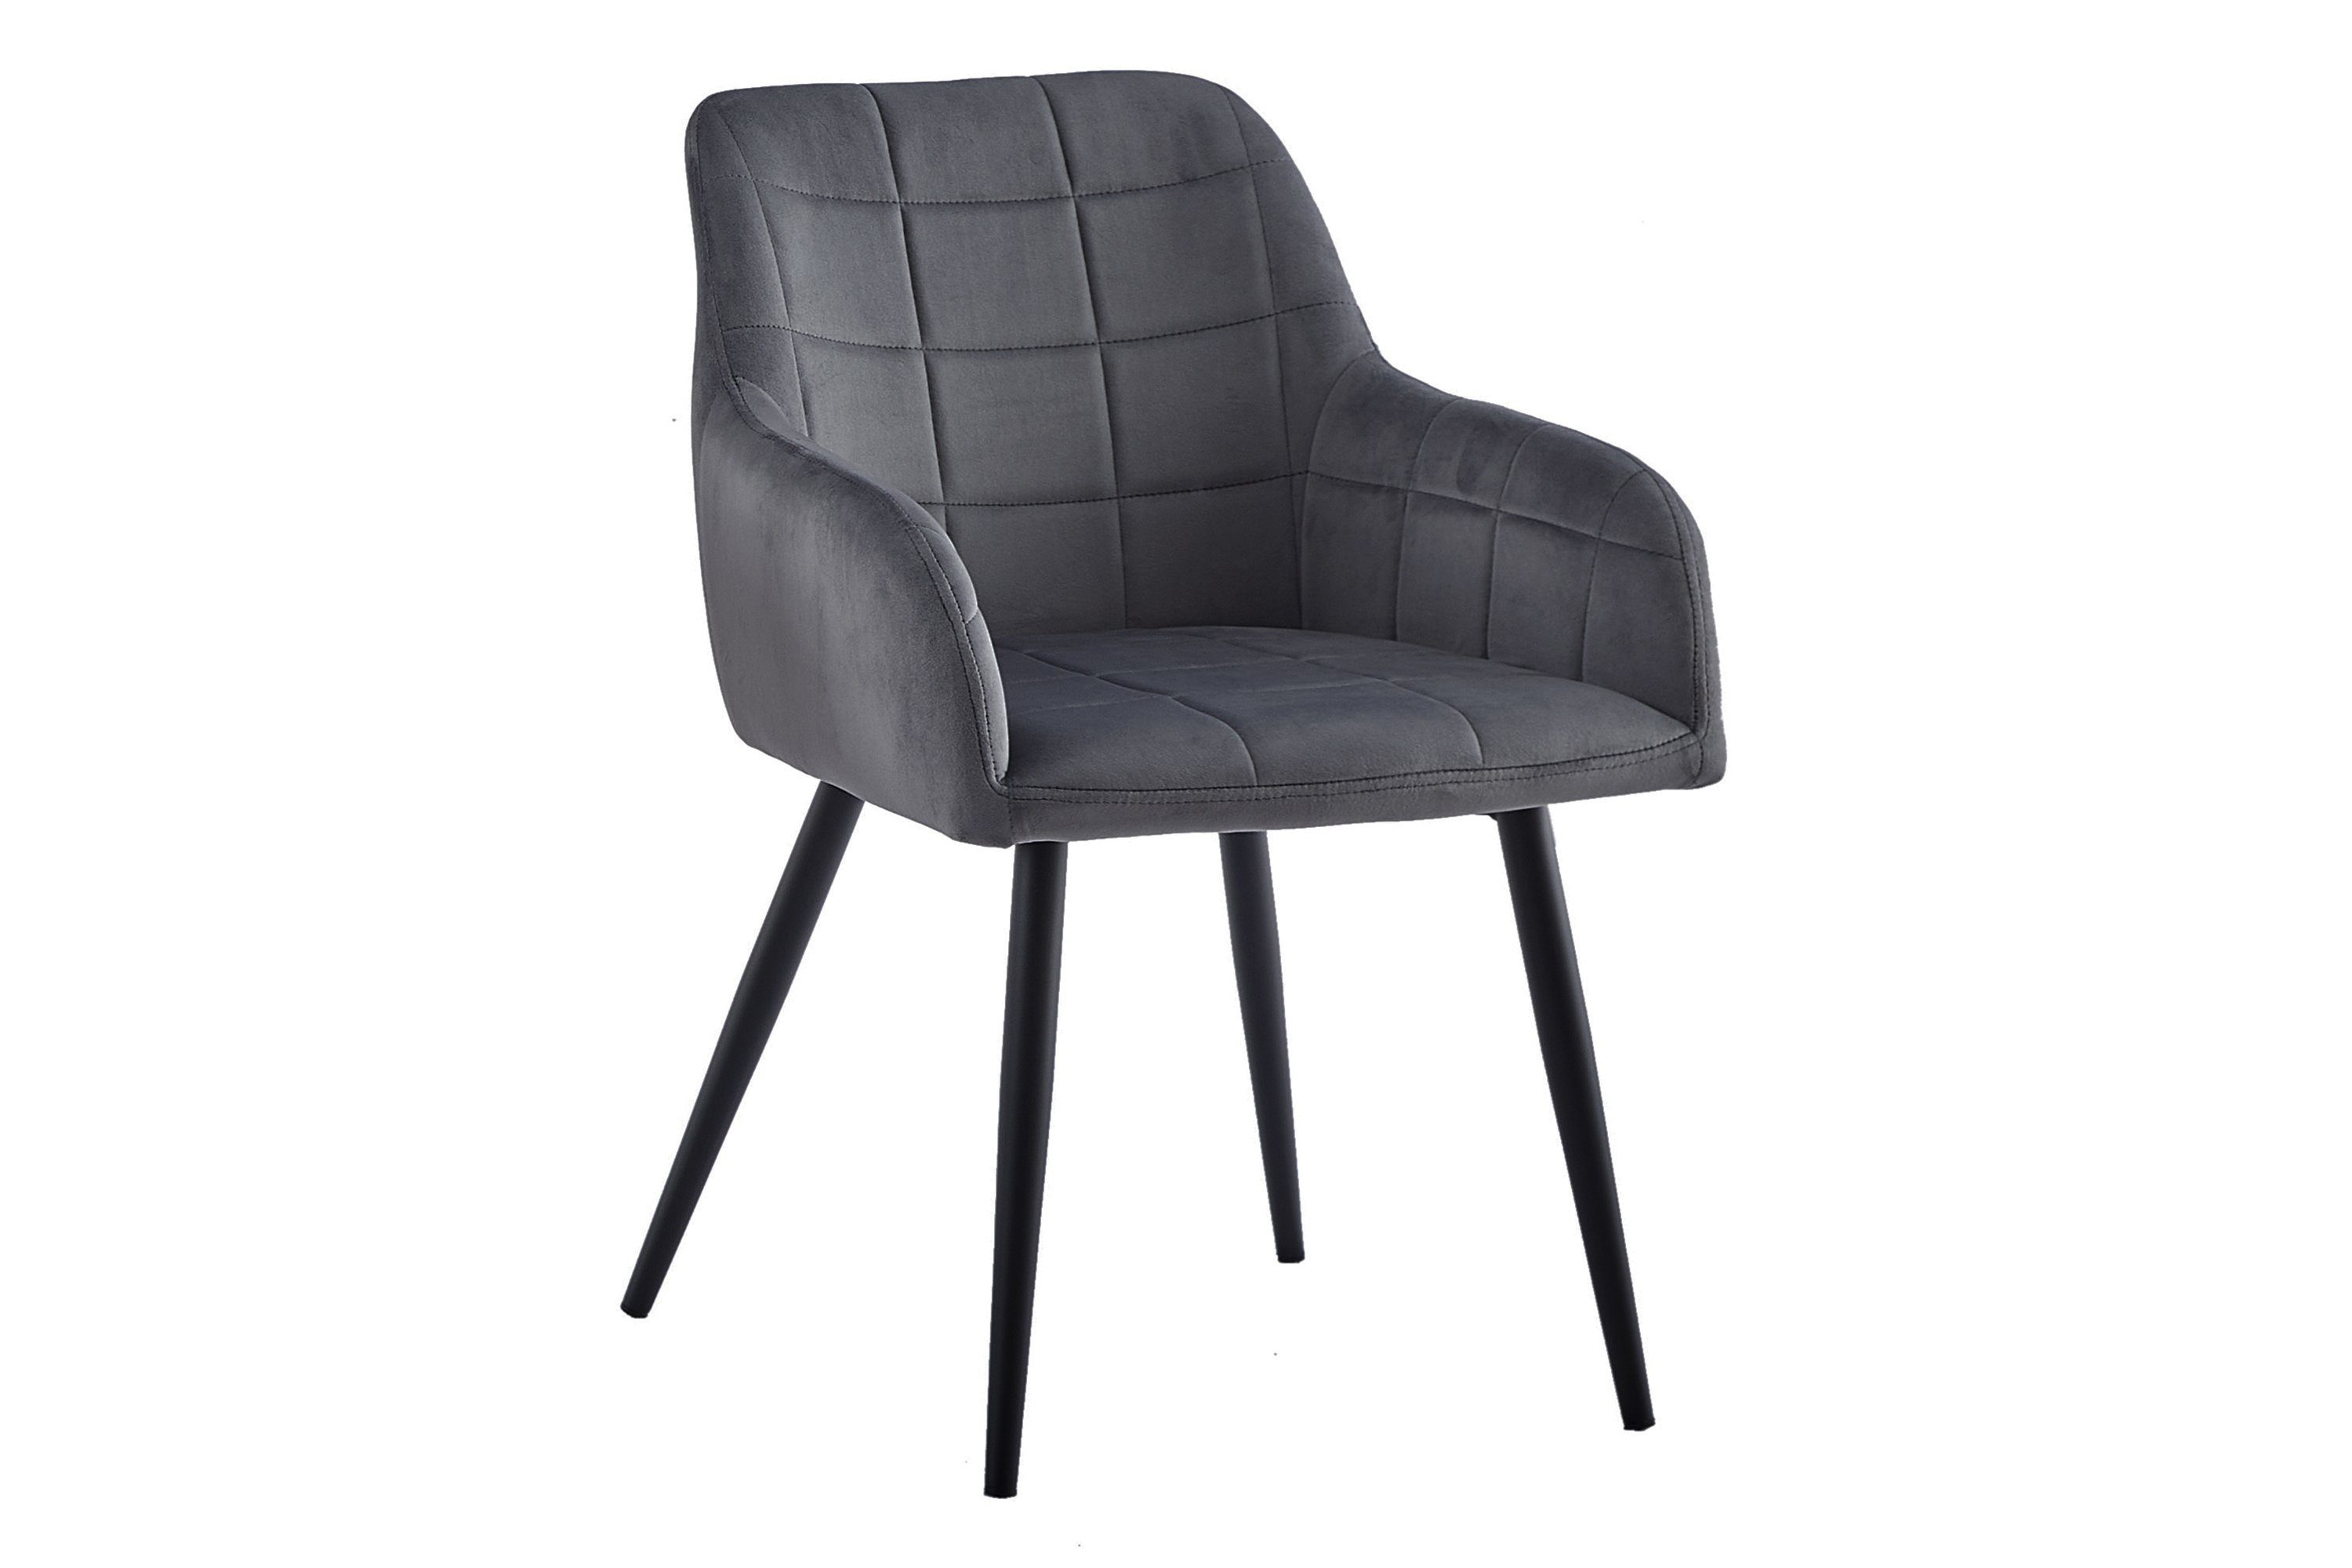 SAM® Schalenstuhl Kai, trendiger skandinavischer Stil mit ergonomischer Sitzschale Anthrazit